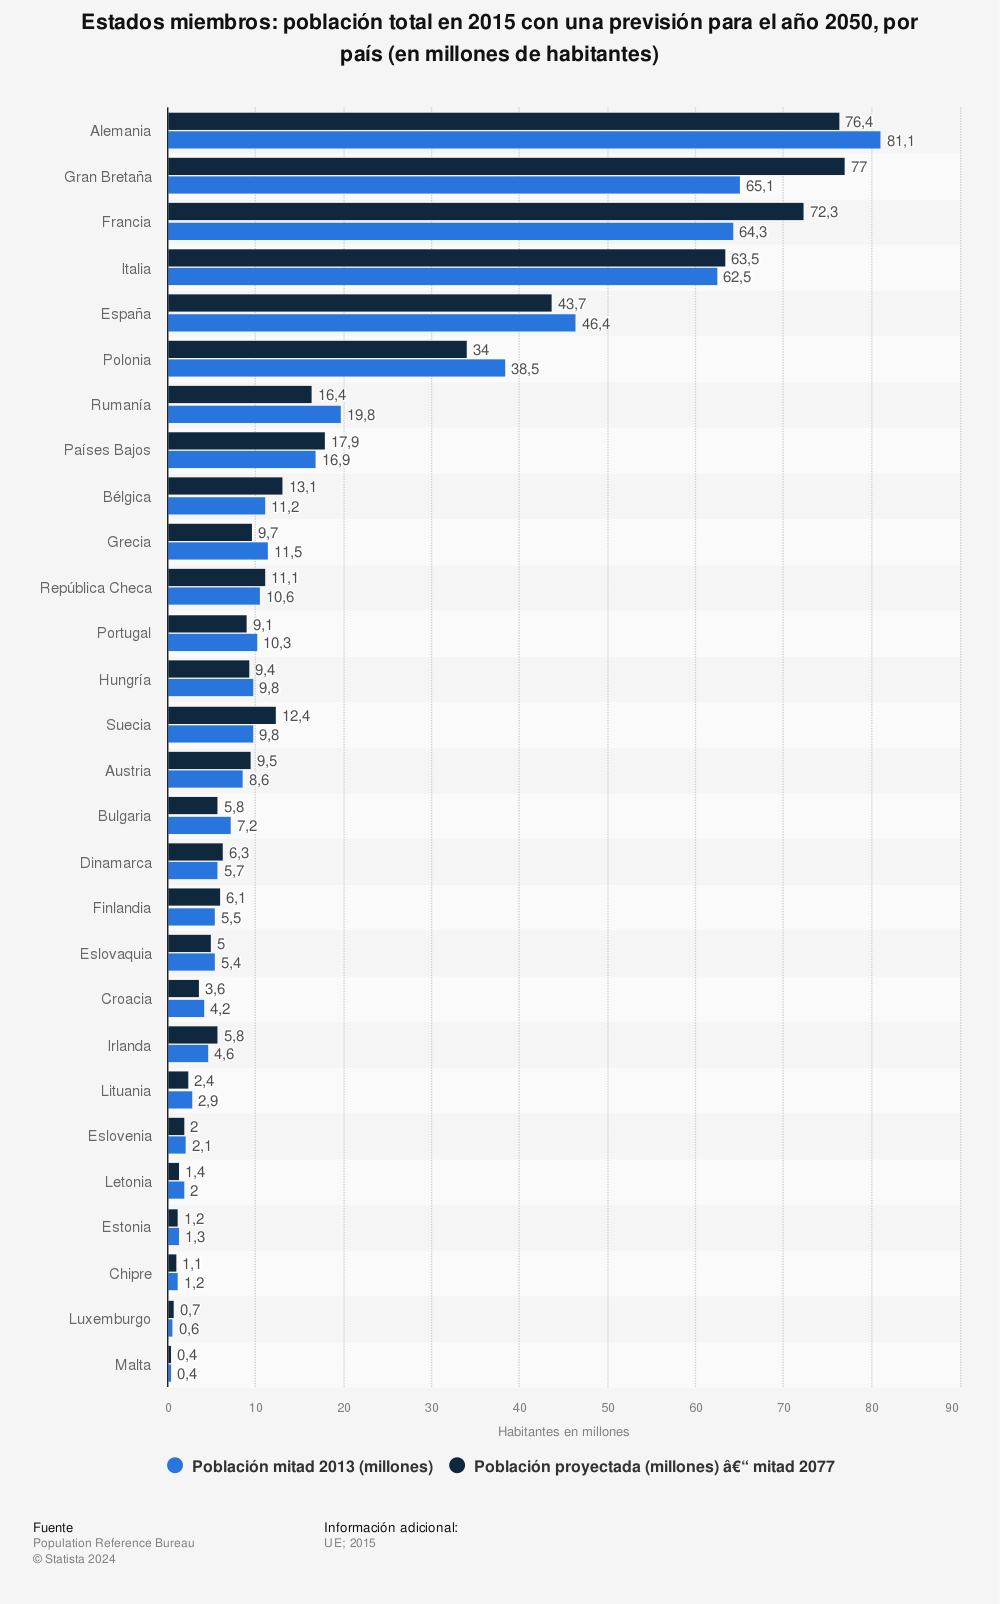 Estadística: Estados miembros: población total en 2015 con una previsión para el año 2050, por país (en millones de habitantes) | Statista